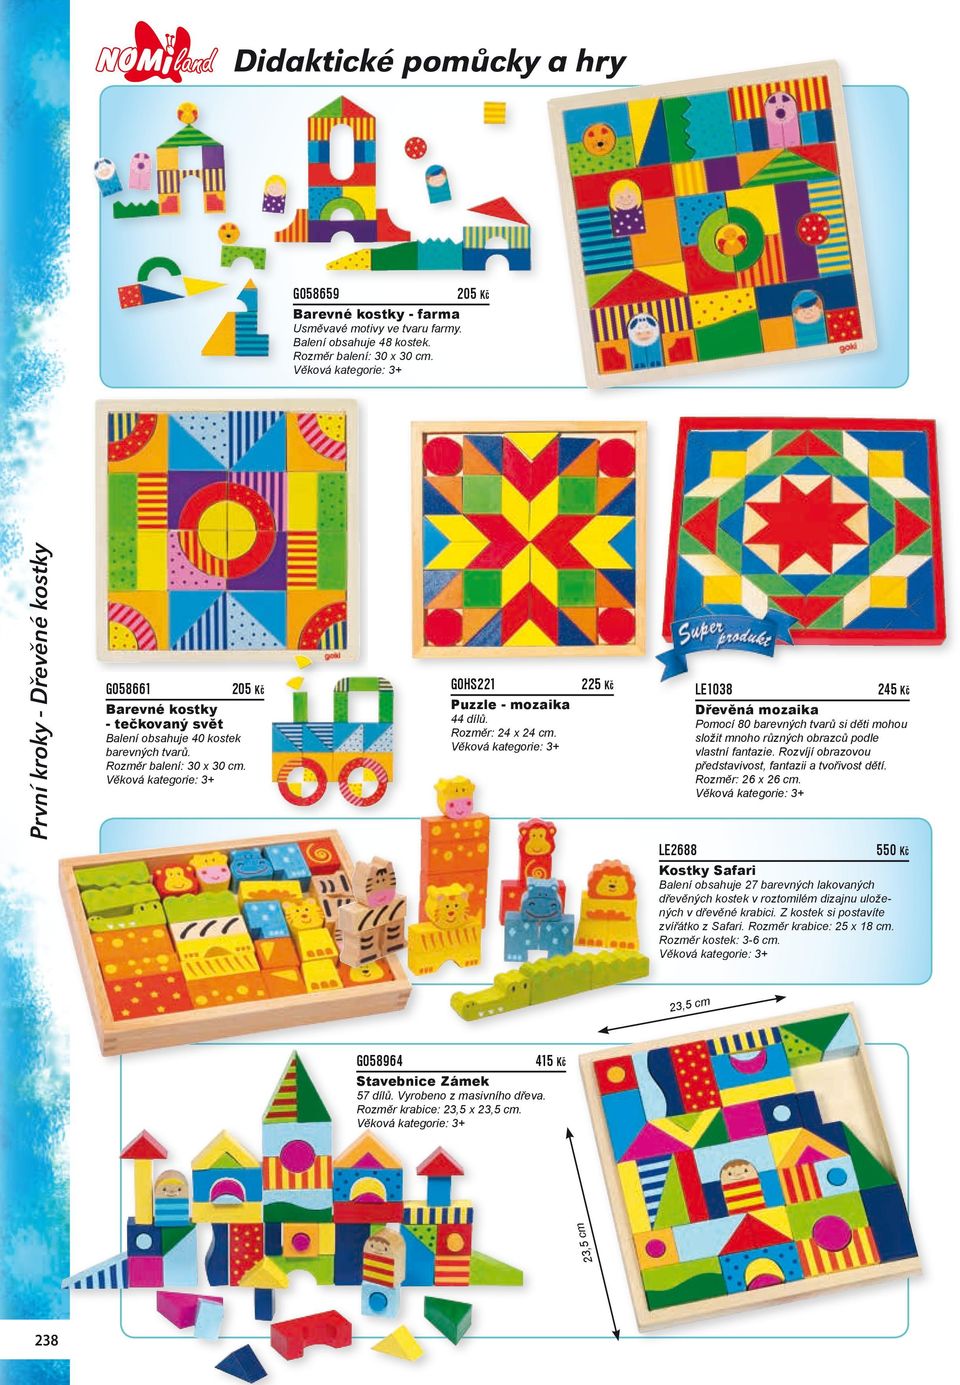 225 Kč LE2688 LE1038 245 Kč Dřevěná mozaika Pomocí 80 barevných tvarů si děti mohou složit mnoho různých obrazců podle vlastní fantazie. Rozvíjí obrazovou představivost, fantazii a tvořivost dětí.